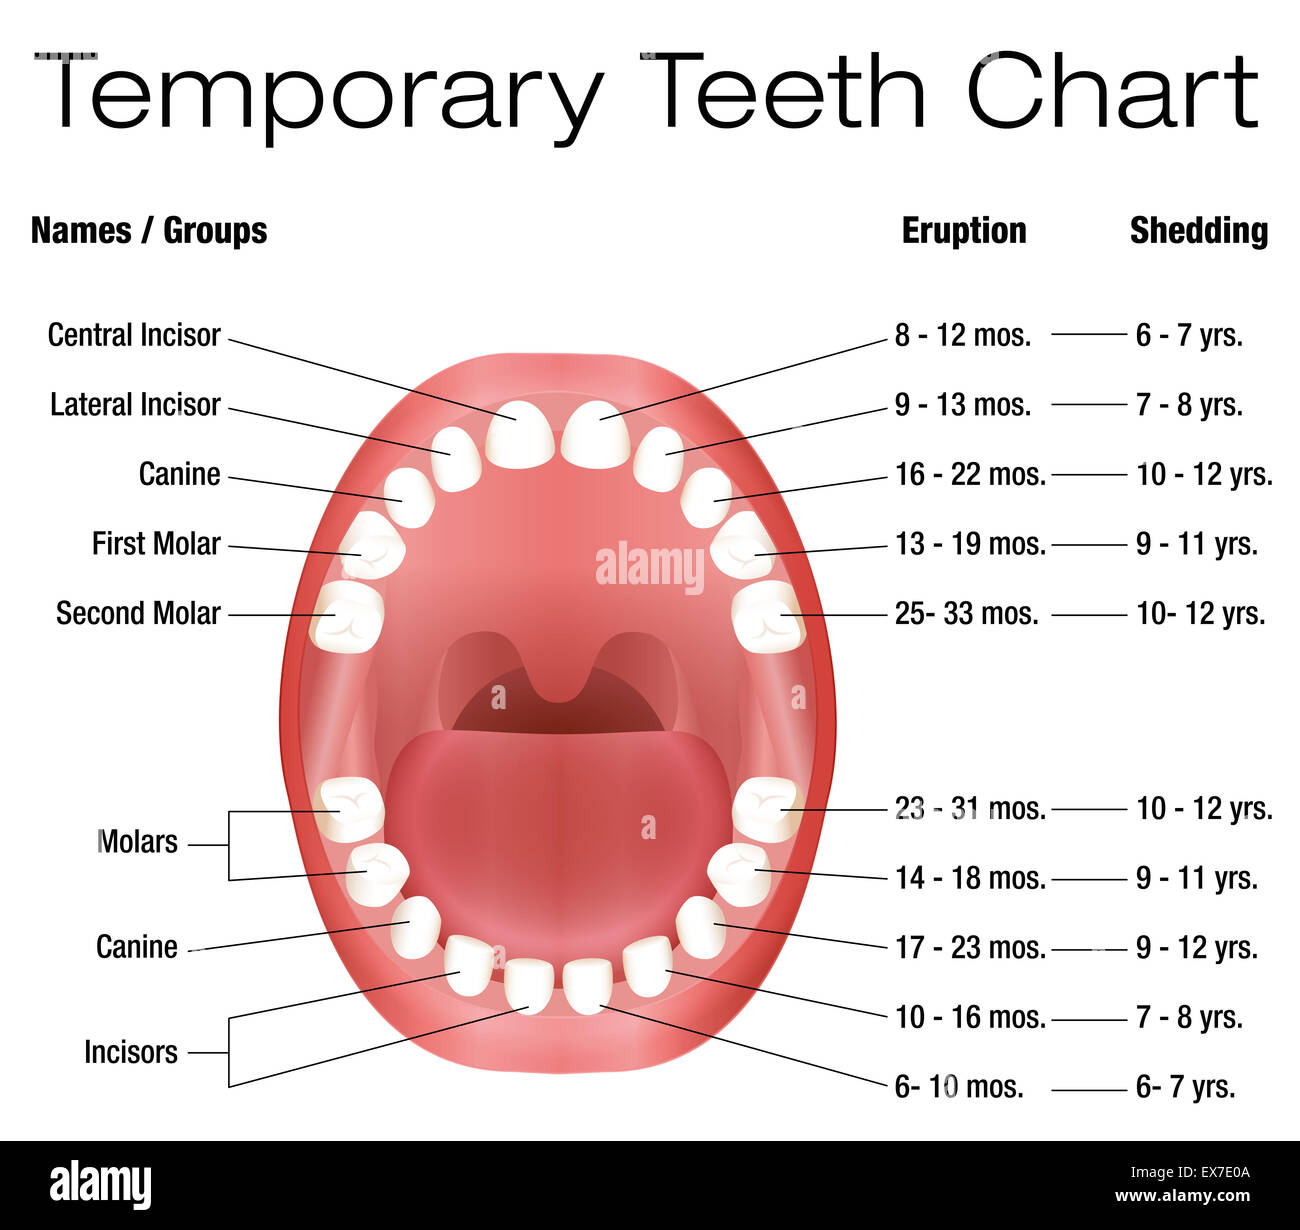 Temporäre Zähne - Namen, Gruppen, Dauer der Eruption und vergießen der Kinder Zähne. Stockfoto